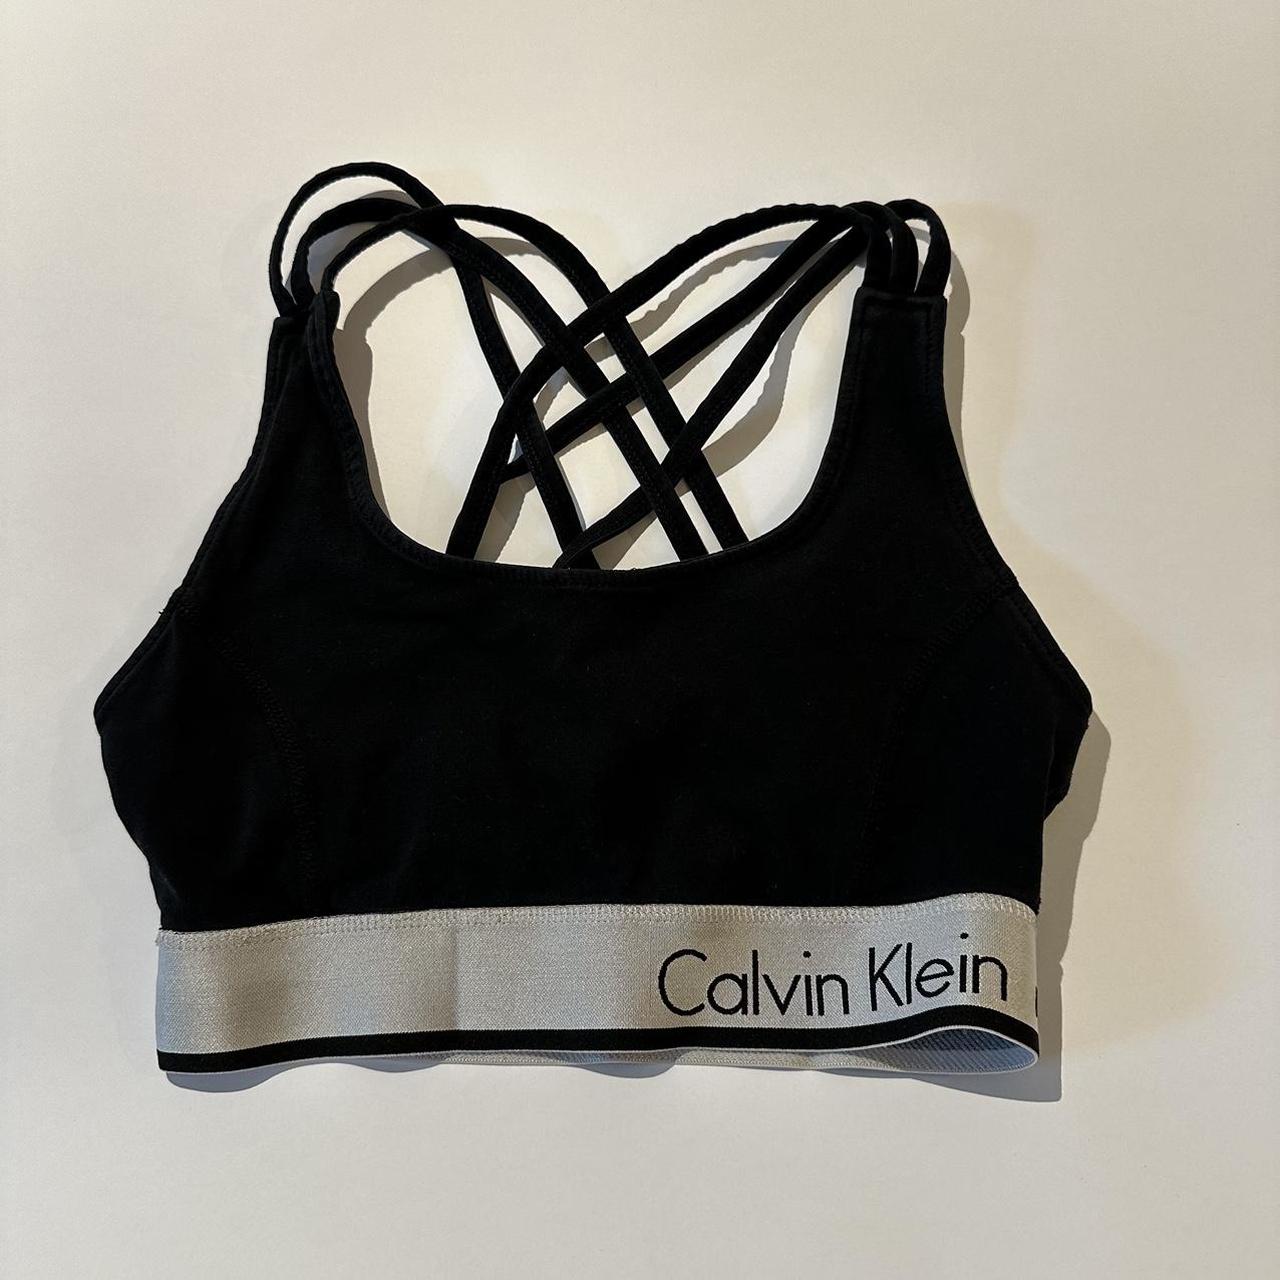 Calvin Klein Women's Black and White Bra | Depop